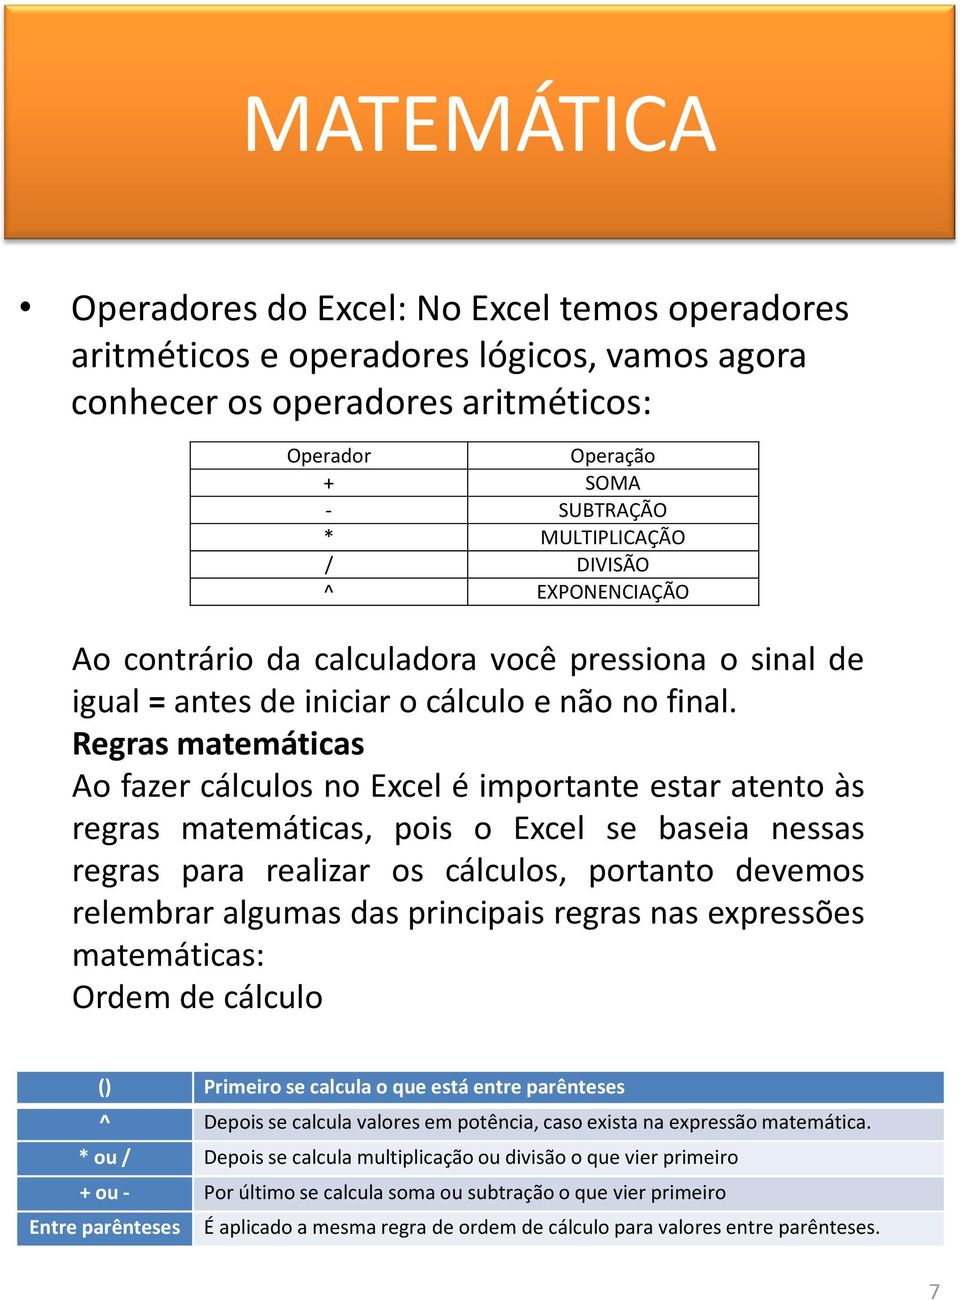 Regras matemáticas Ao fazer cálculos no Excel é importante estar atento às regras matemáticas, pois o Excel se baseia nessas regras para realizar os cálculos, portanto devemos relembrar algumas das